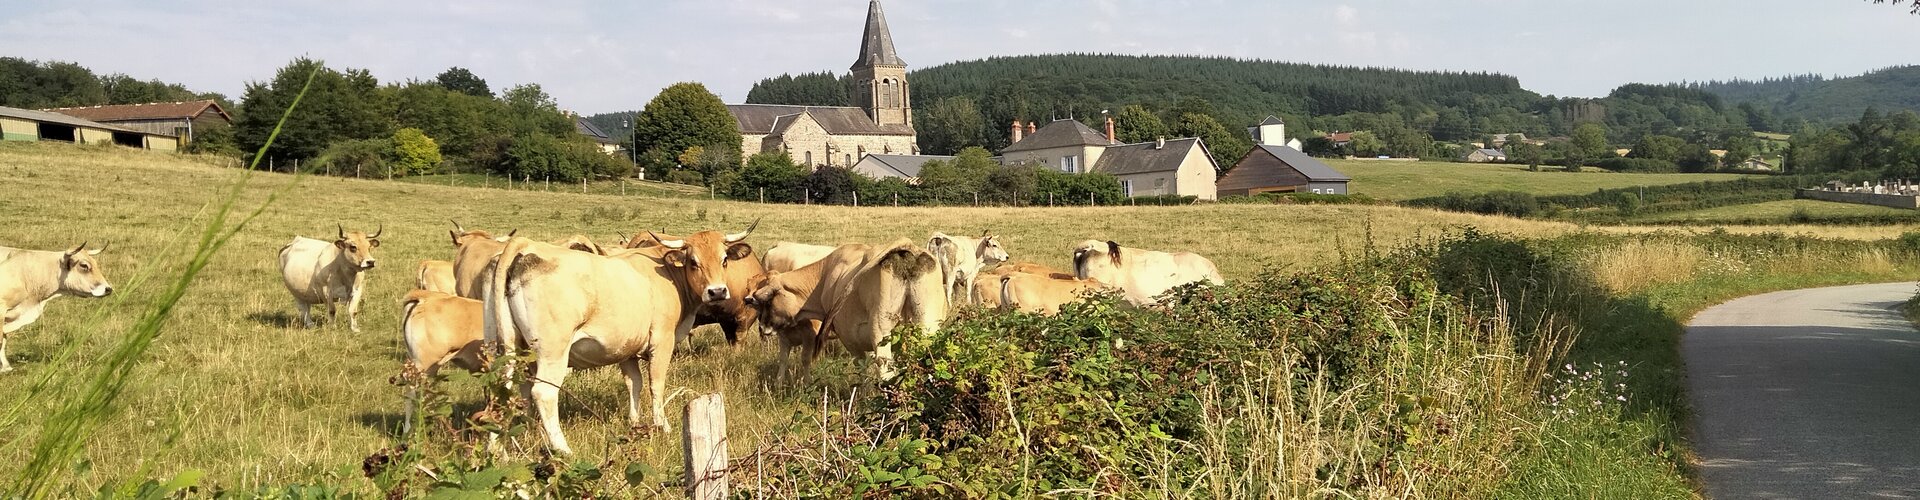 L'agriculture sur le commune de La Cellette 63 en Auvergne